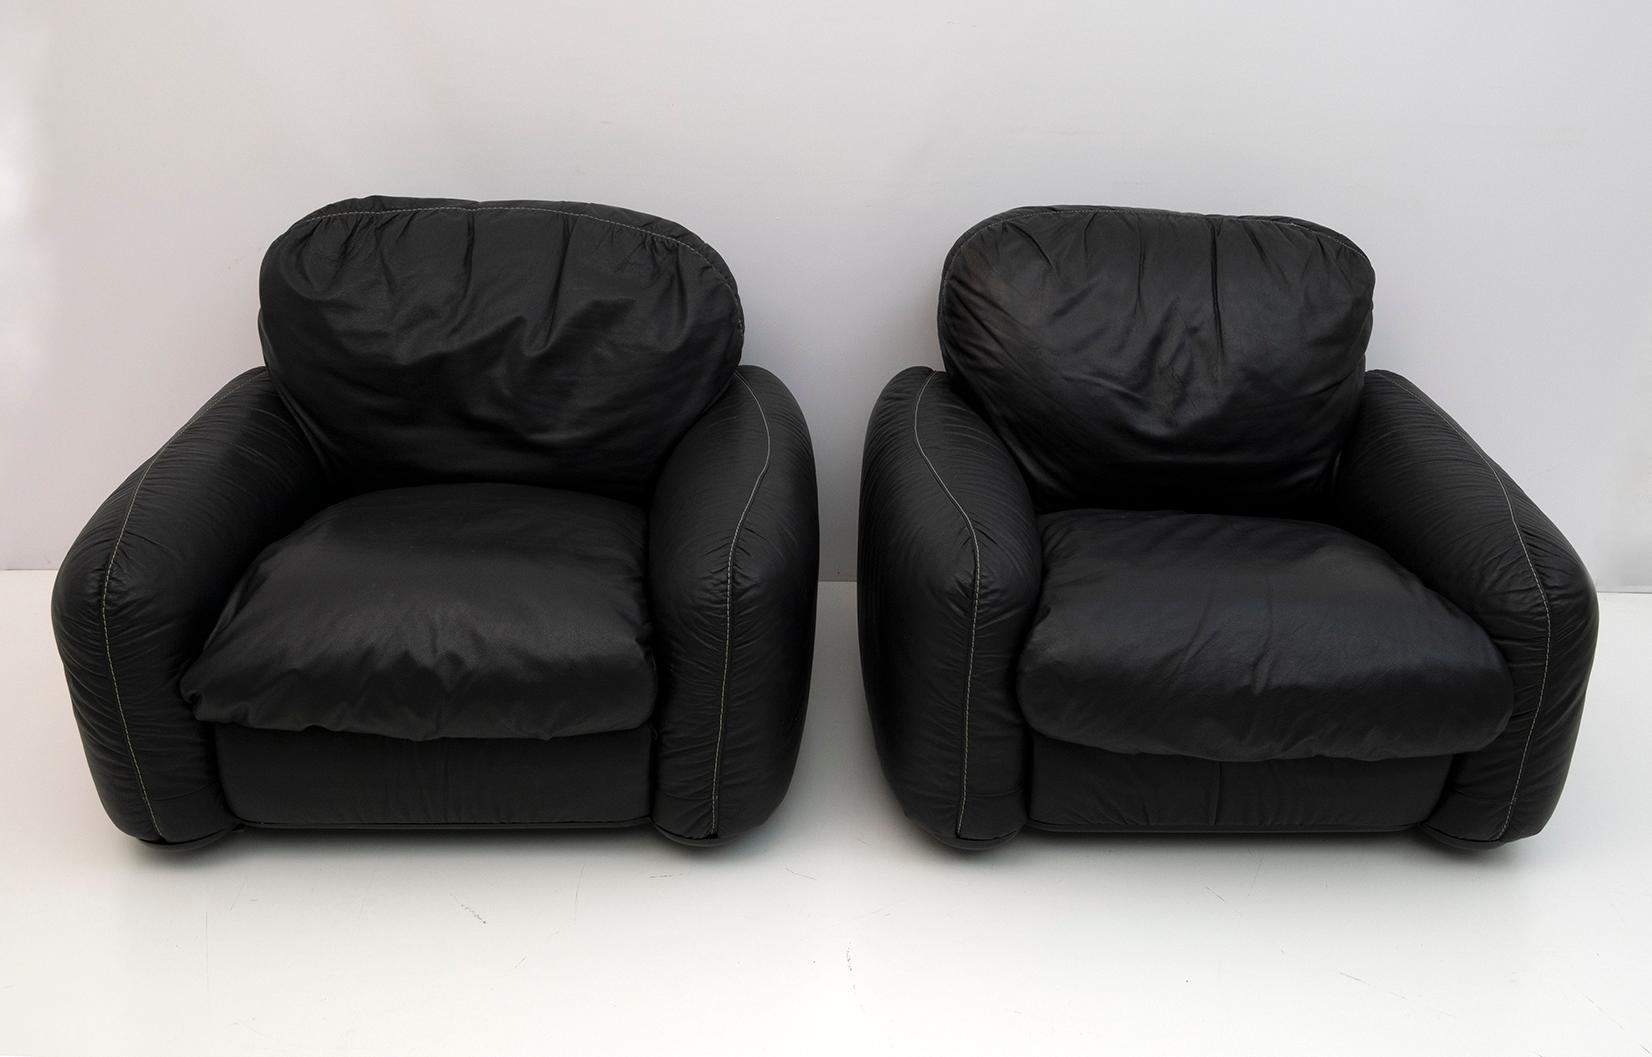 Ein Paar Piumotto-Sessel von Arrigo Arrigoni für Busnelli aus den 1970er Jahren.
Polsterung aus echtem schwarzem Leder.
Füße aus Kunststoff.